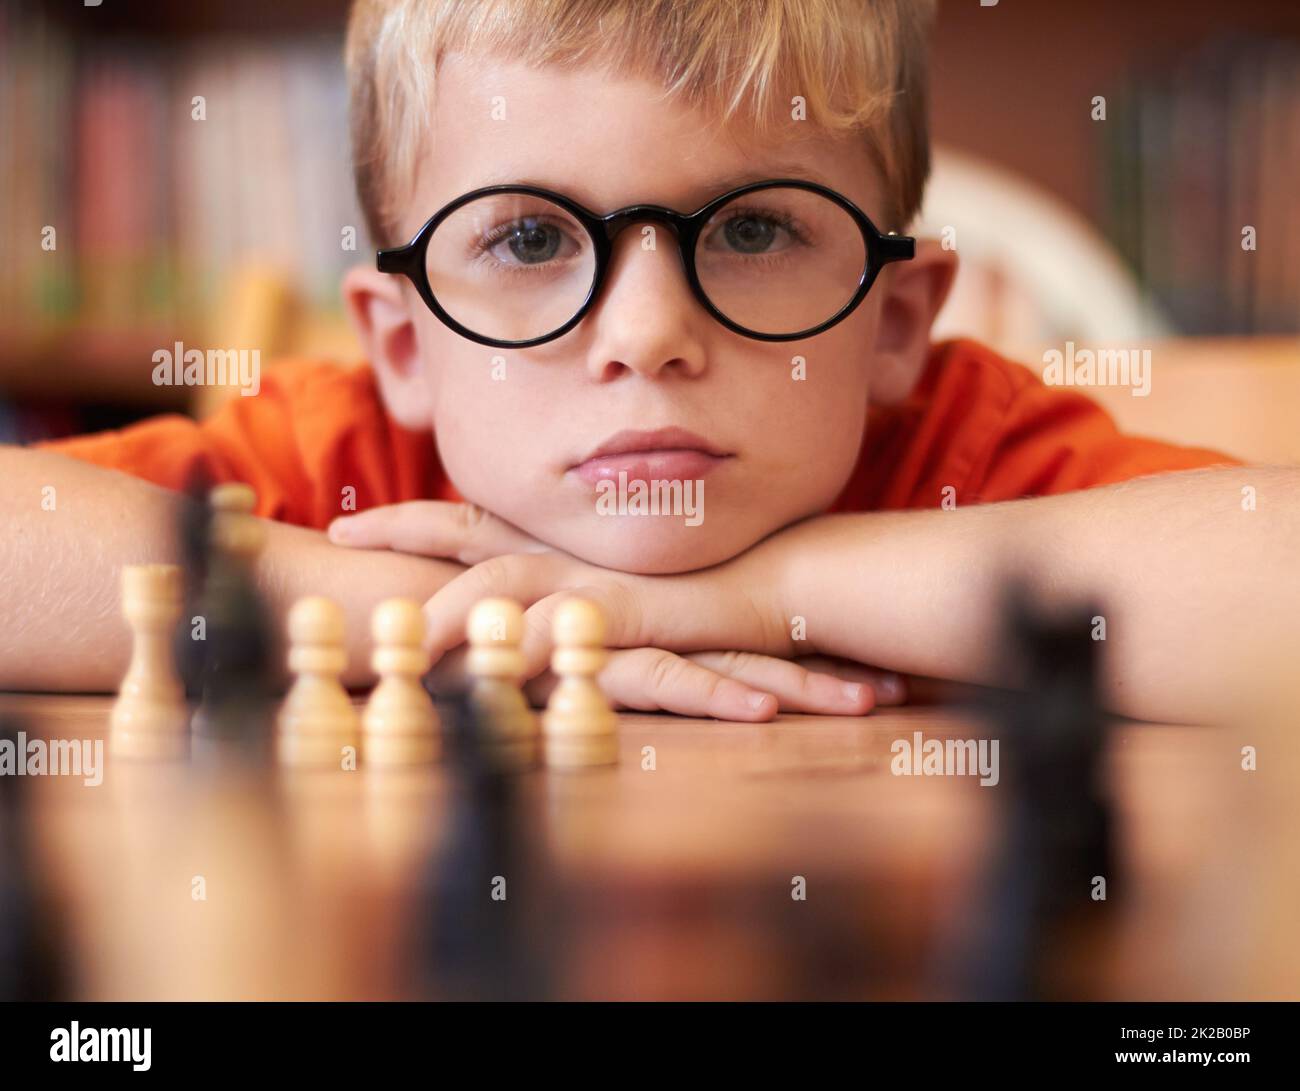 Réfléchir à sa prochaine étape. Jeune garçon portant des lunettes et jouant aux échecs. Banque D'Images